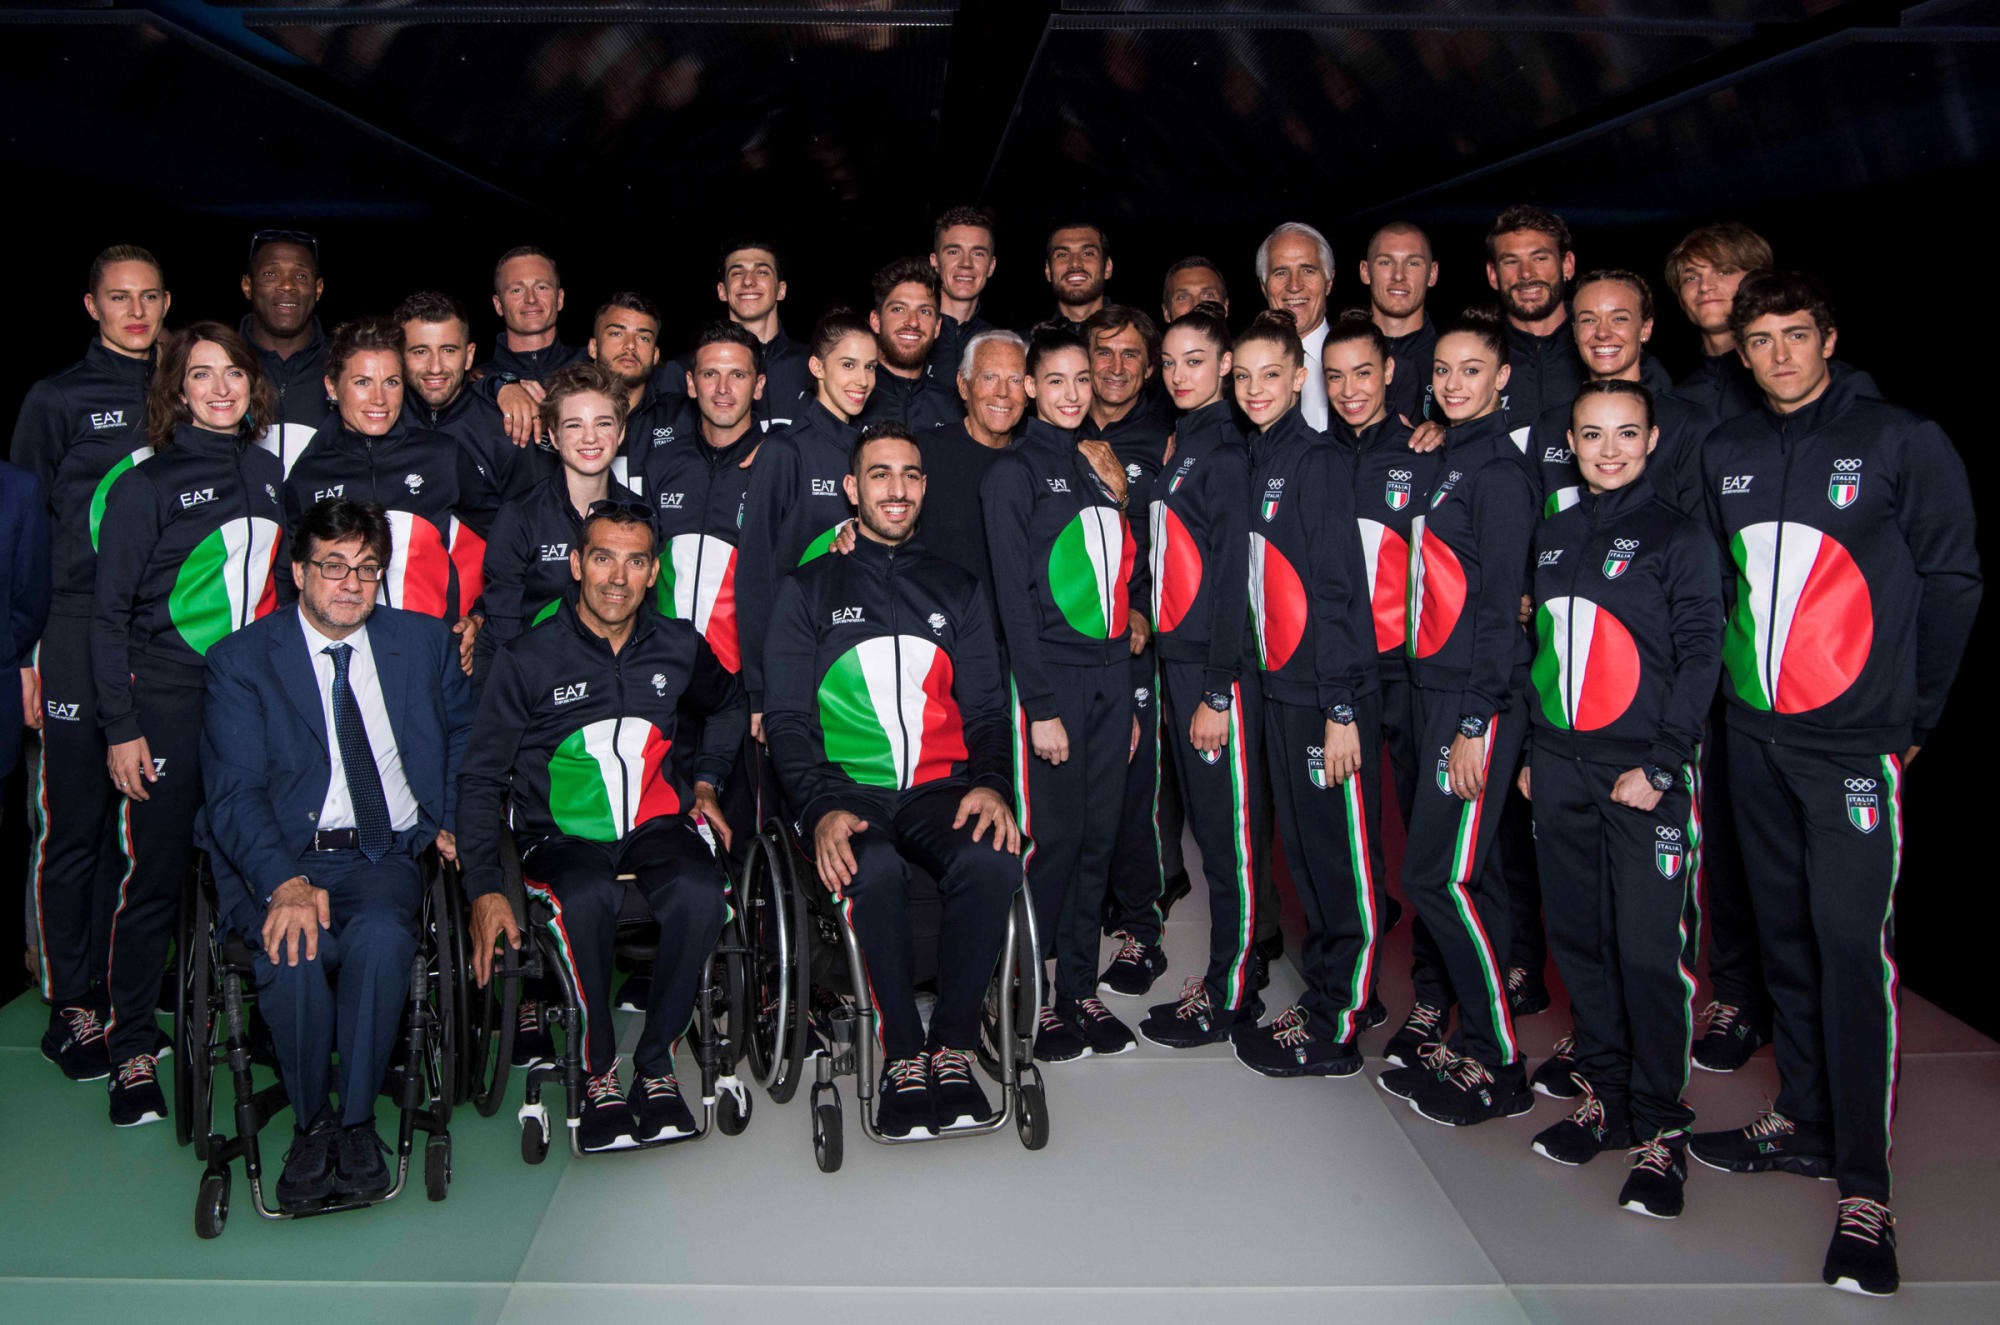 Fashionsnap Com 東京オリンピック イタリア代表選手団のウェアはエンポリオ アルマーニのスポーツライン エンポリオ アルマーニ Ea7 が製作 日の丸をイメージした円形でイタリアの国旗カラーをデザインしています T Co 1r3ehkgcfe T